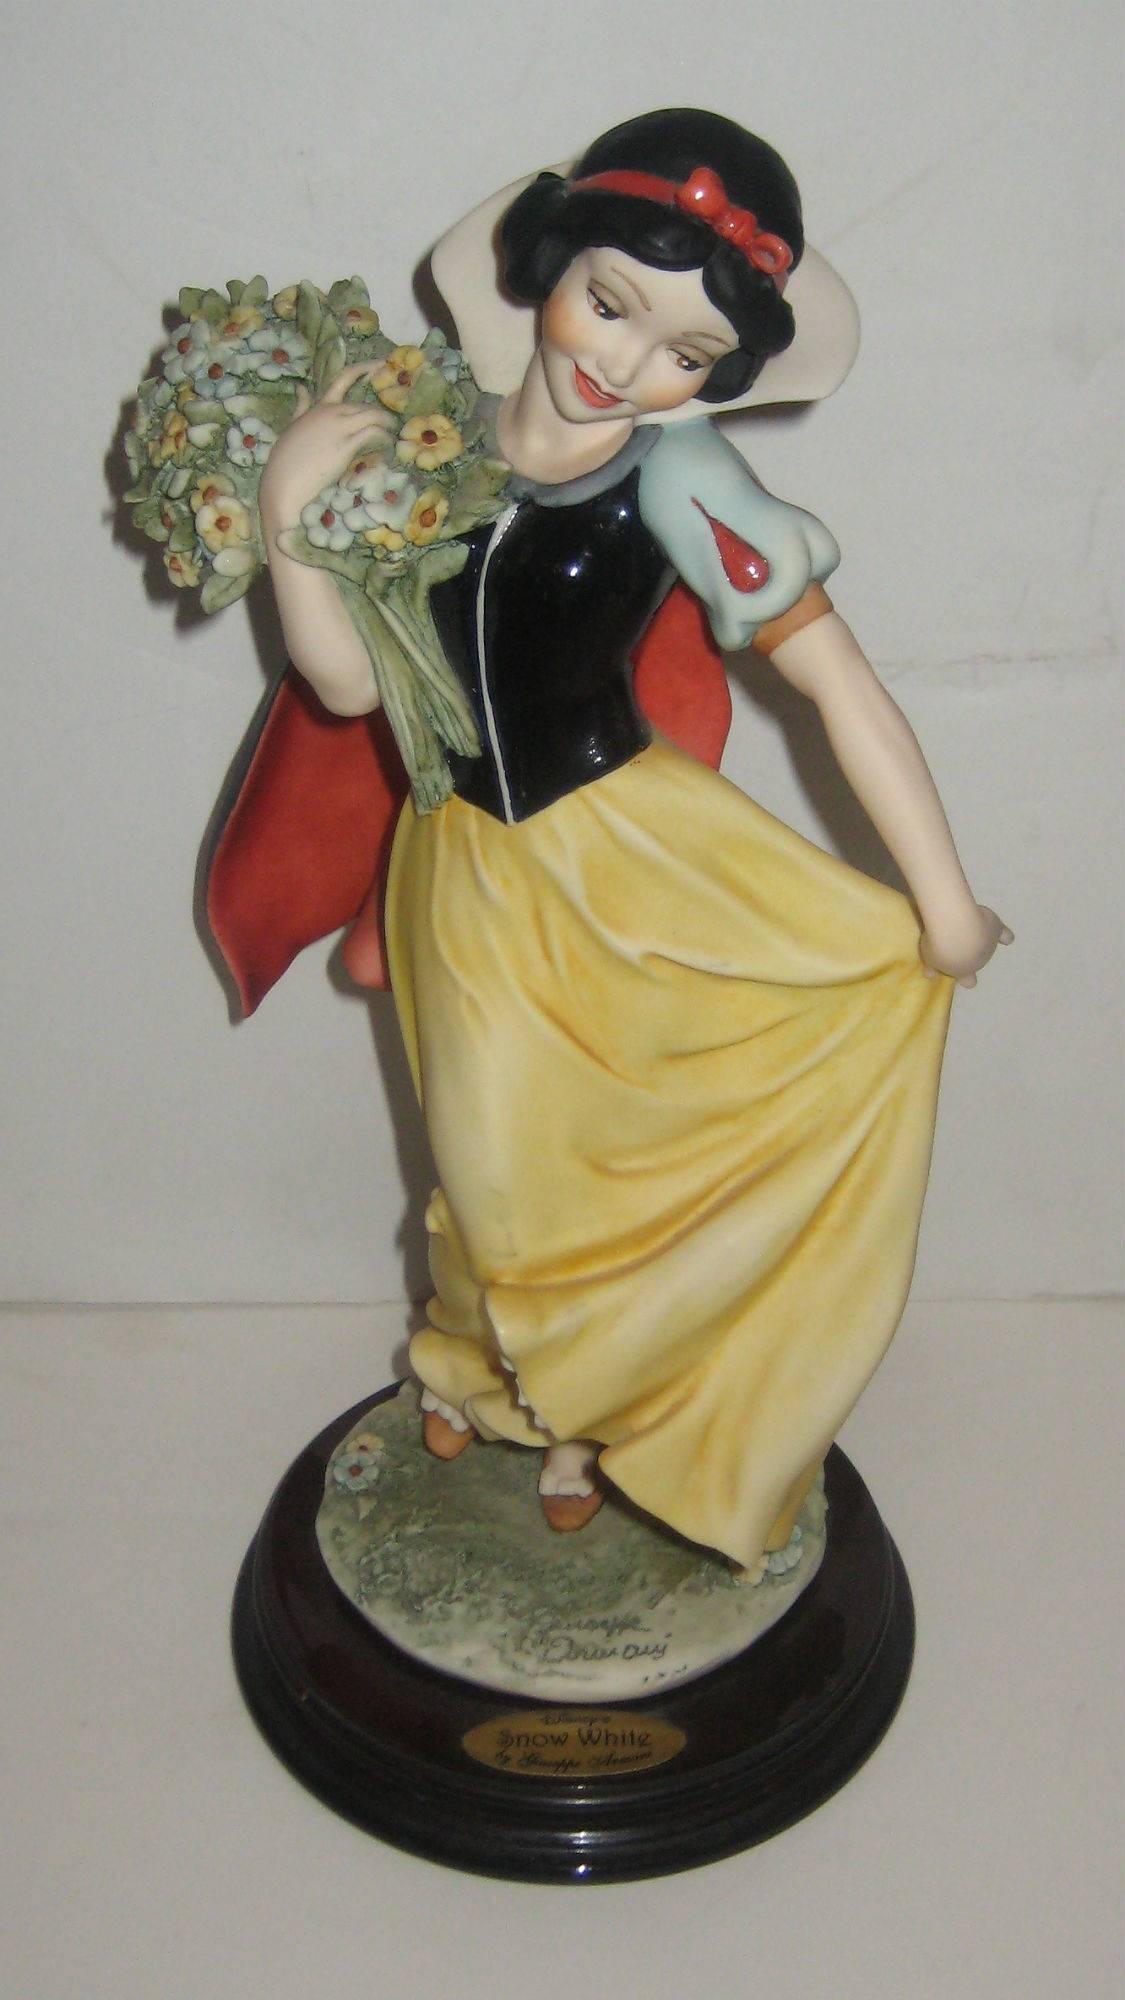 italien Collection de quatre figurines de personnages de Giuseppe Armani Disney